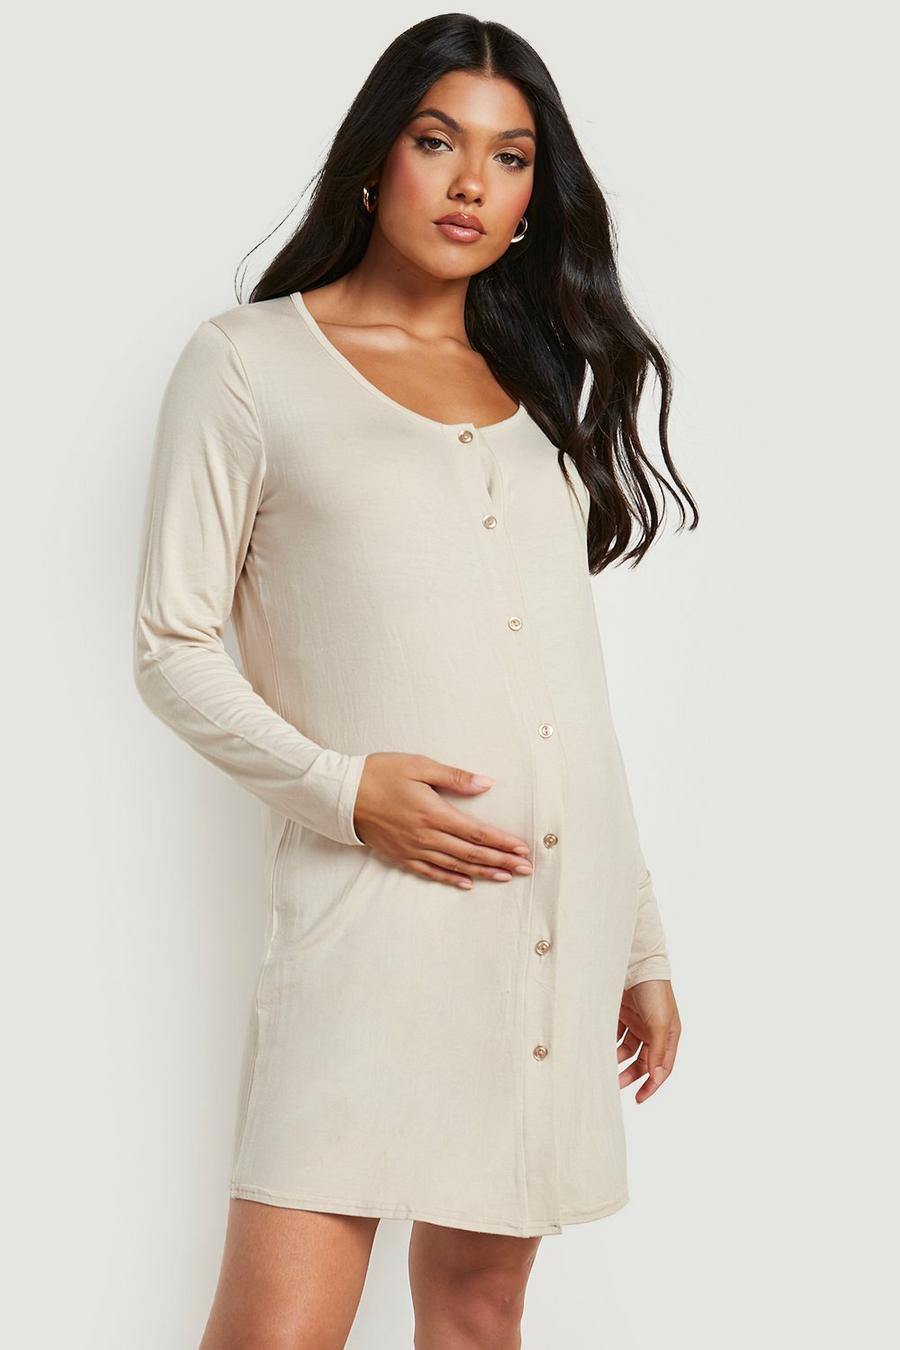 Oatmeal beige Maternity Long Sleeve Button Front Nightie